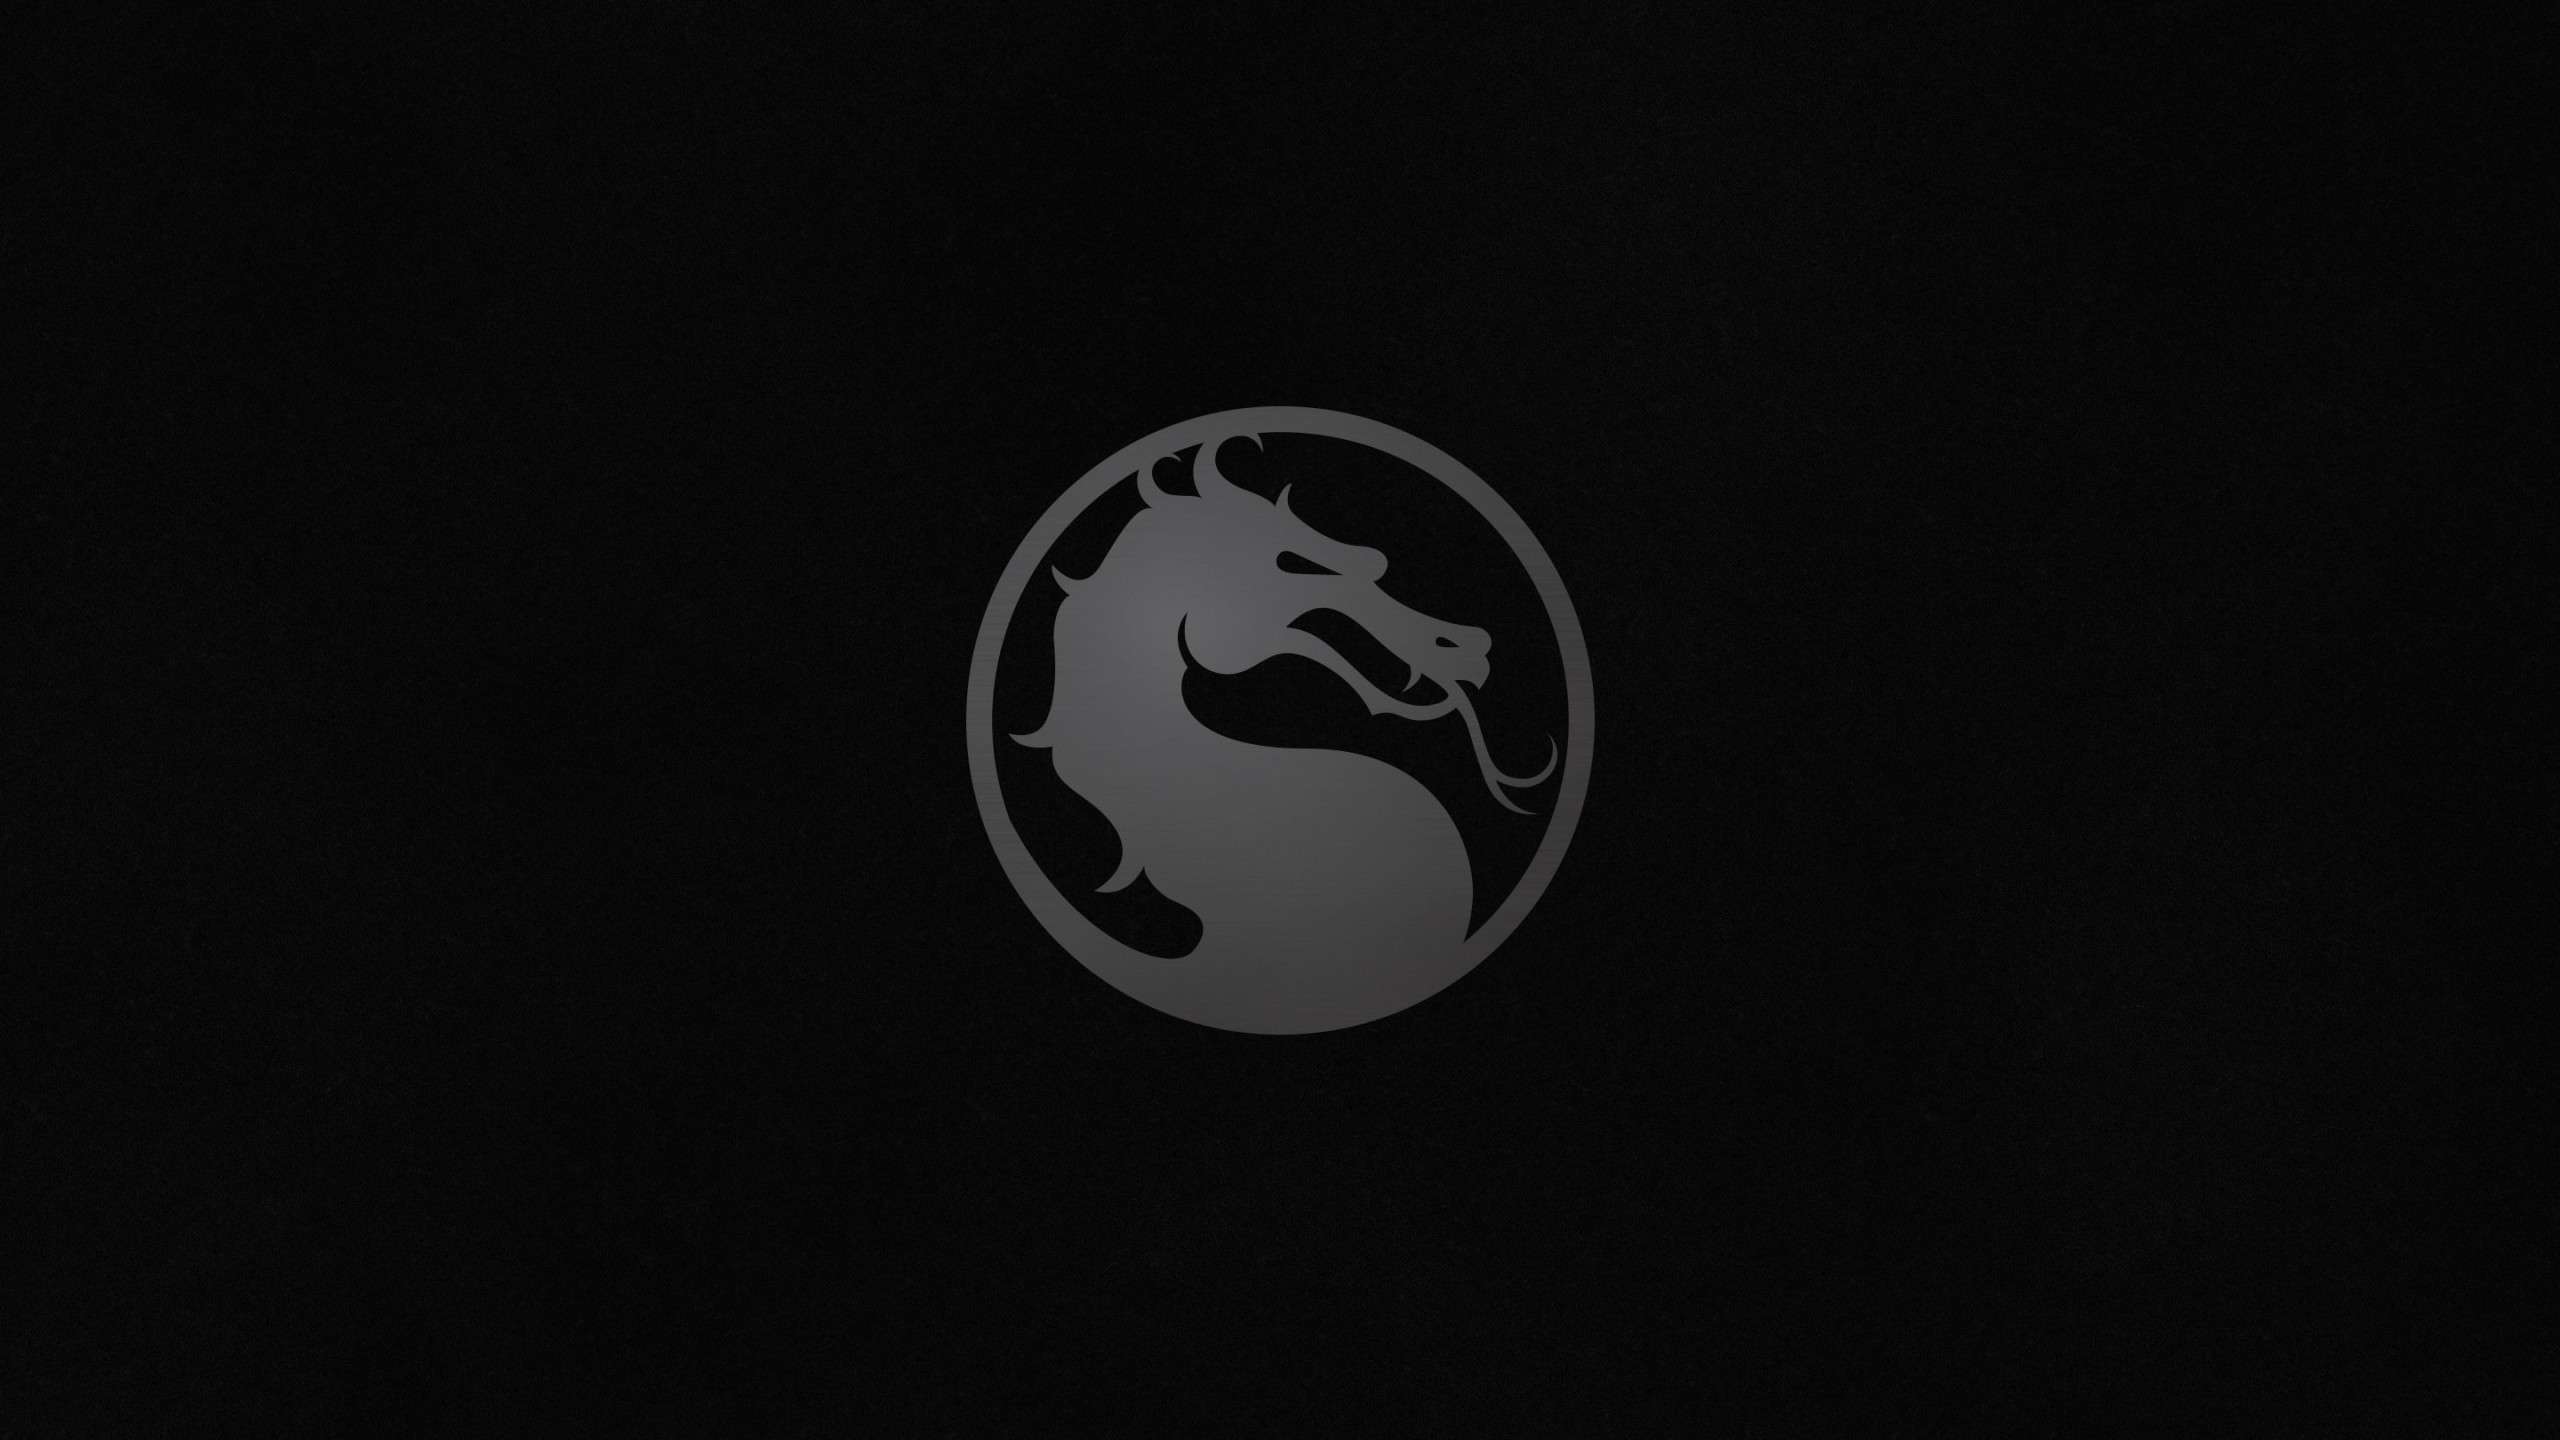 Mortal Kombat X Logo Wallpaper for Desktop 2560x1440